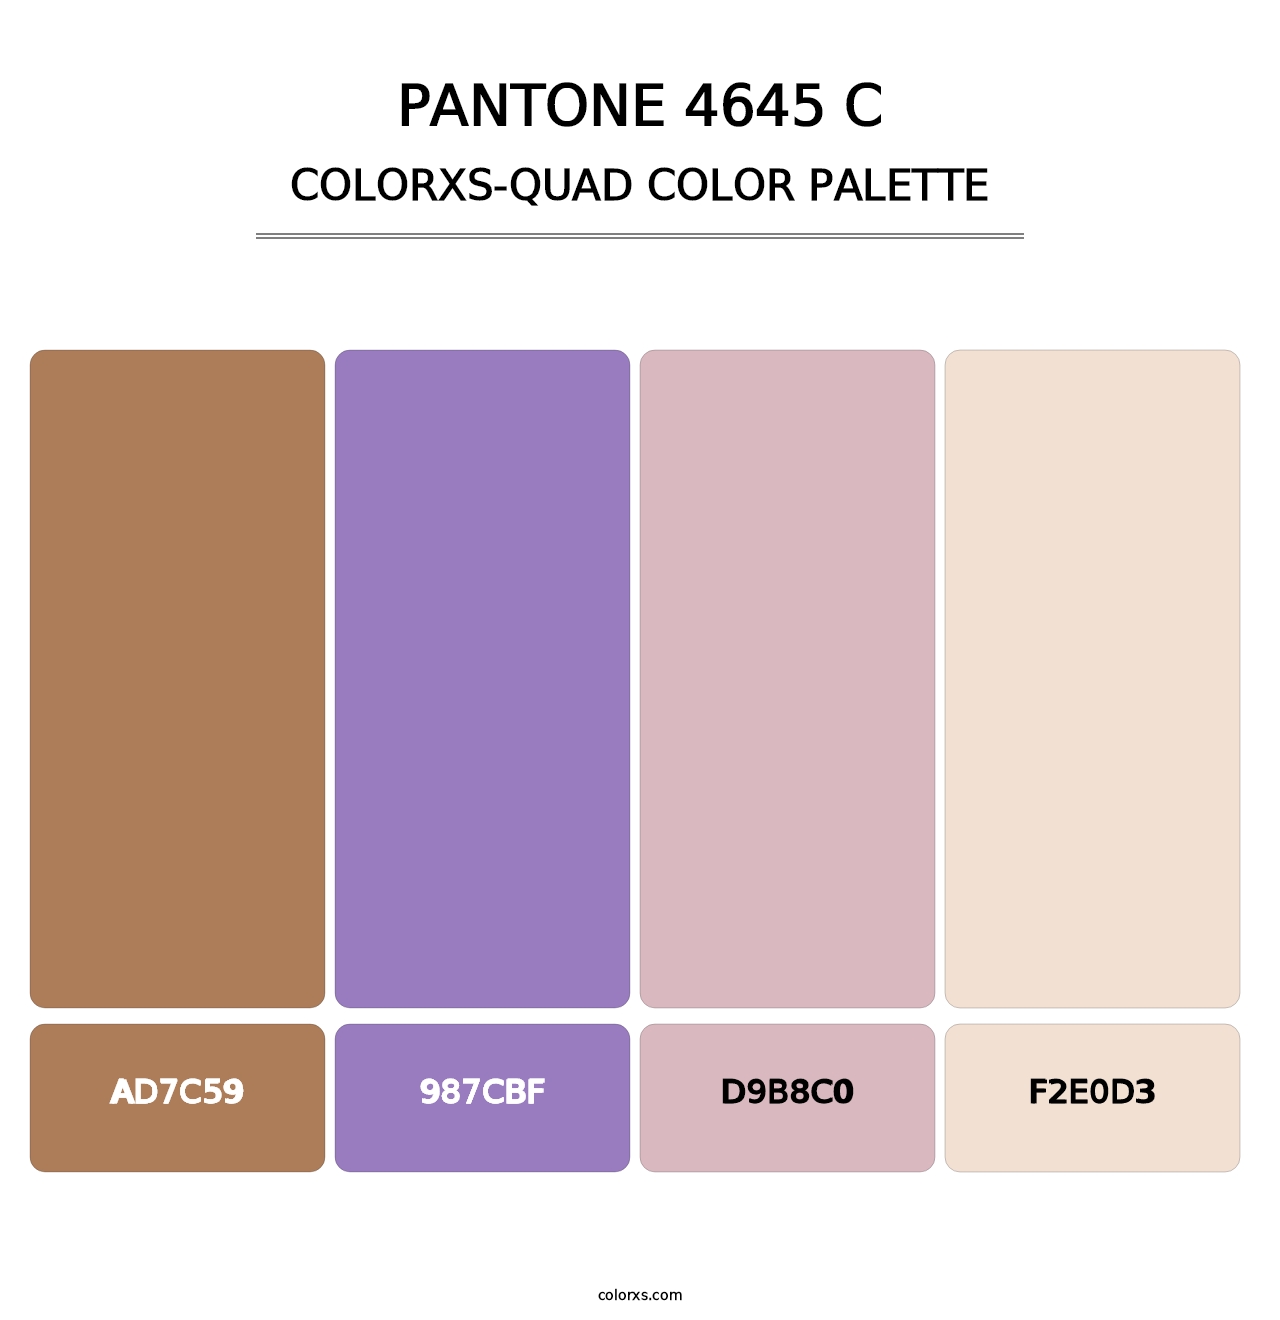 PANTONE 4645 C - Colorxs Quad Palette